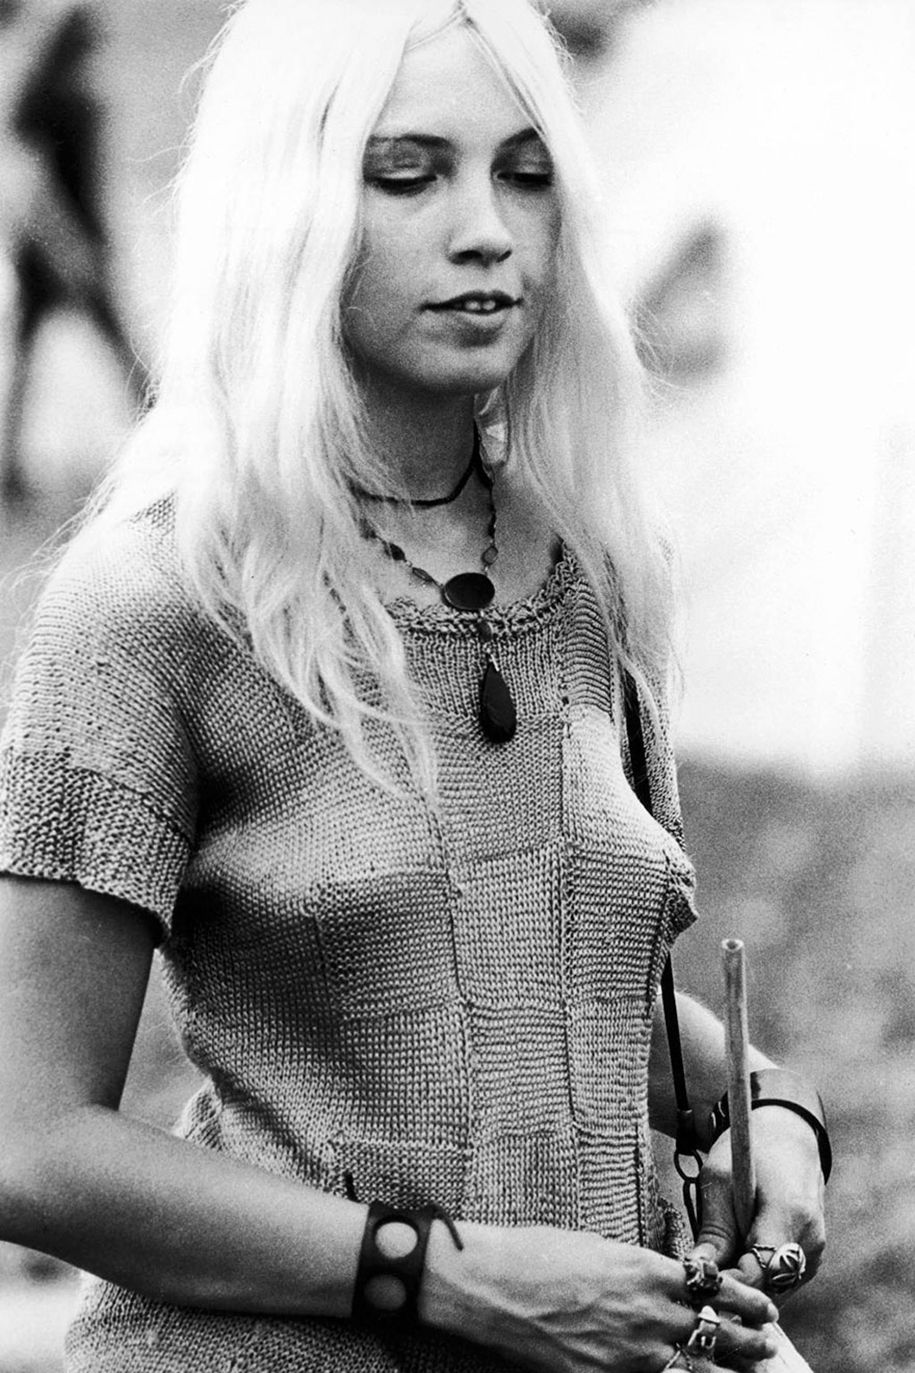 naised-60-ndate-woodstocki mood-1969-8